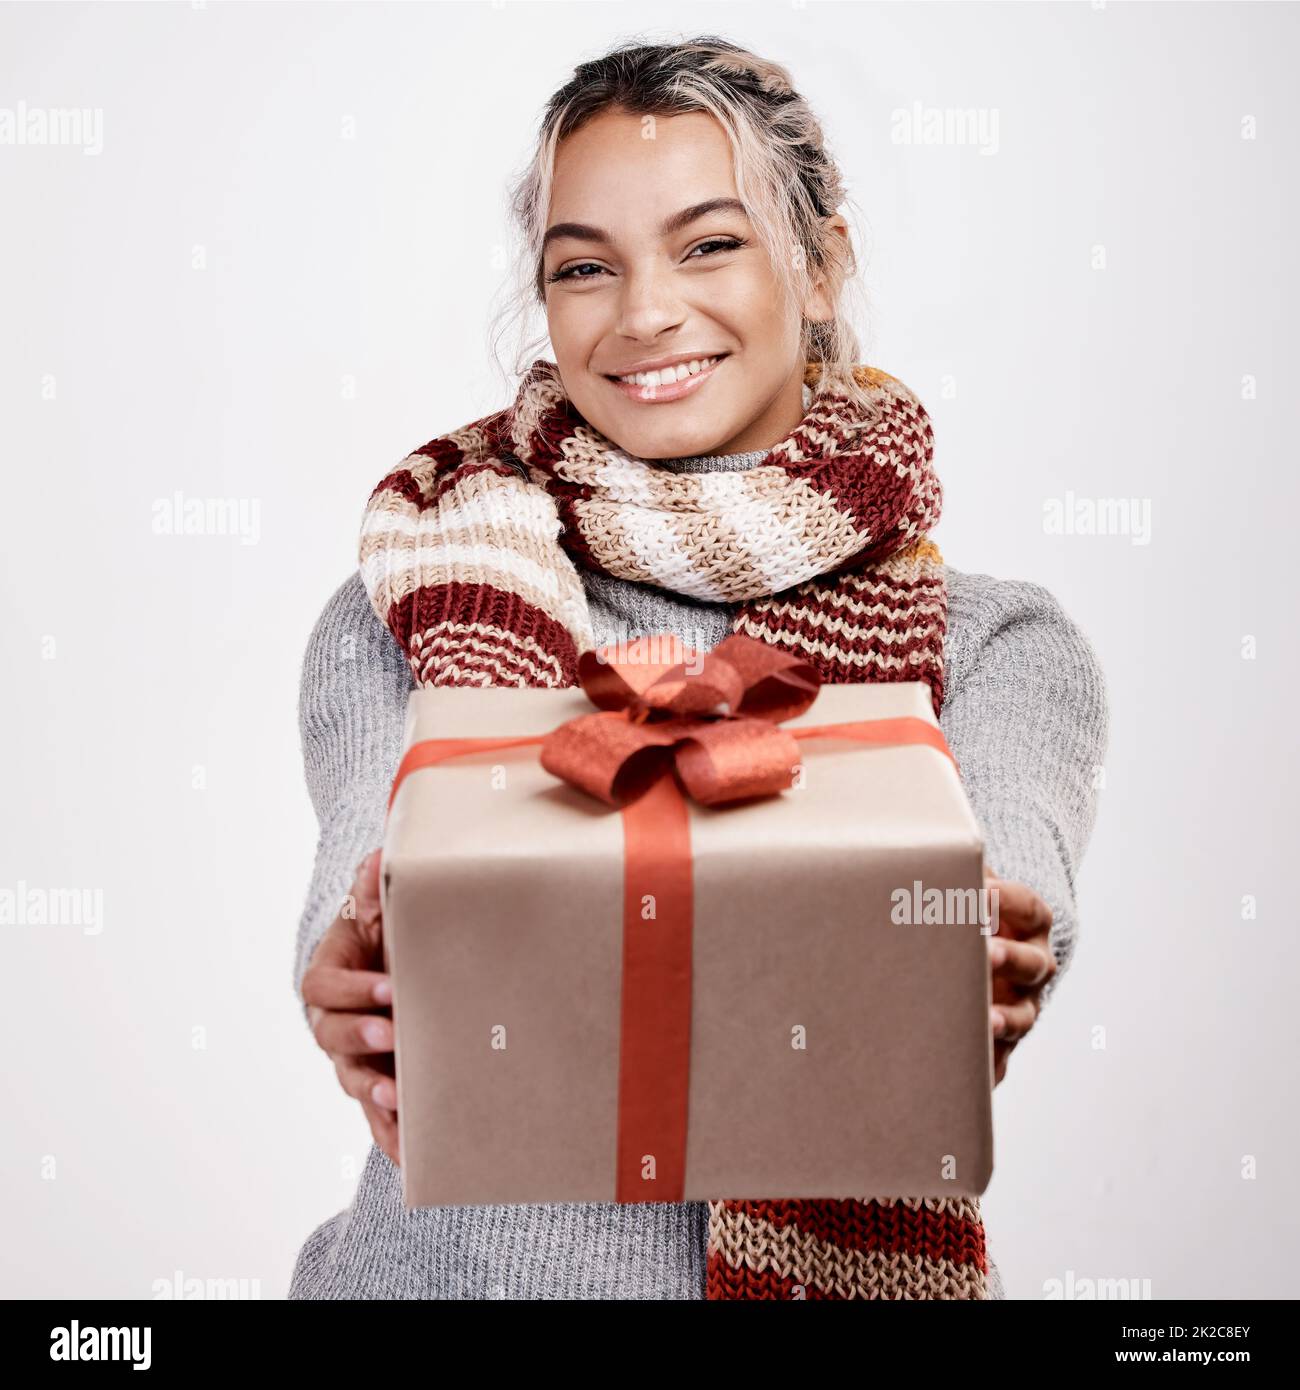 De moi à vous. Portrait studio d'une jeune femme attirante qui vous offre un cadeau tout en étant vêtue d'une tenue sur le thème de Noël. Banque D'Images